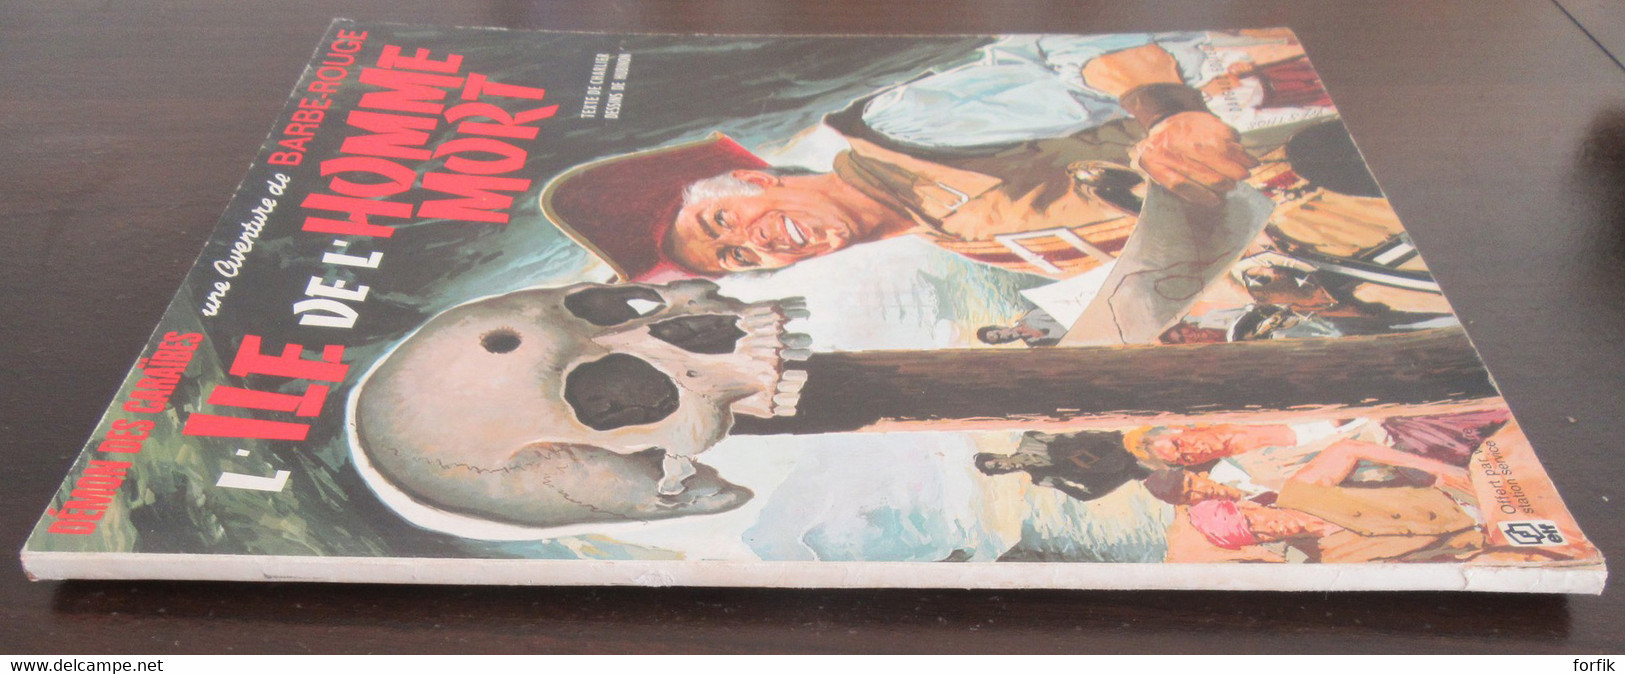 Charlier - BD Barbe-Rouge n°7 - L'Ile de l'Homme Mort - Edition Elf 1972 - Broché, Couverture souple - BE